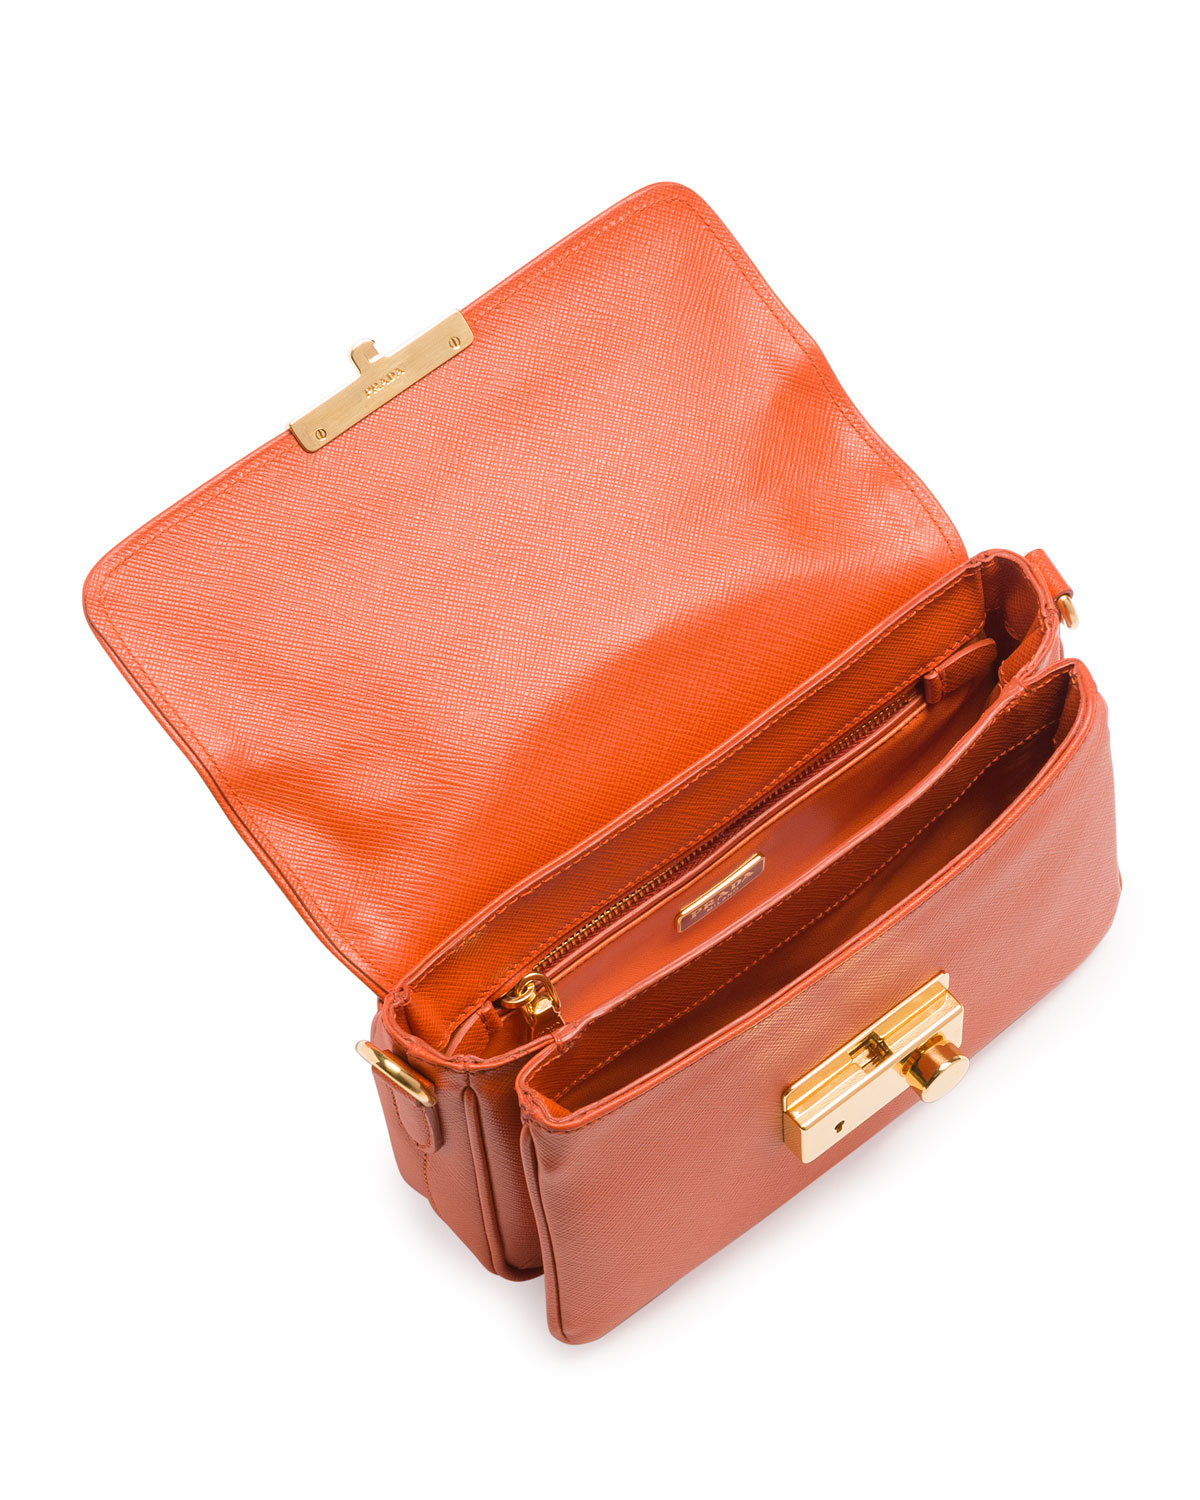 Prada Saffiano Small Sound Cross-Body Bag in Orange | Lyst  